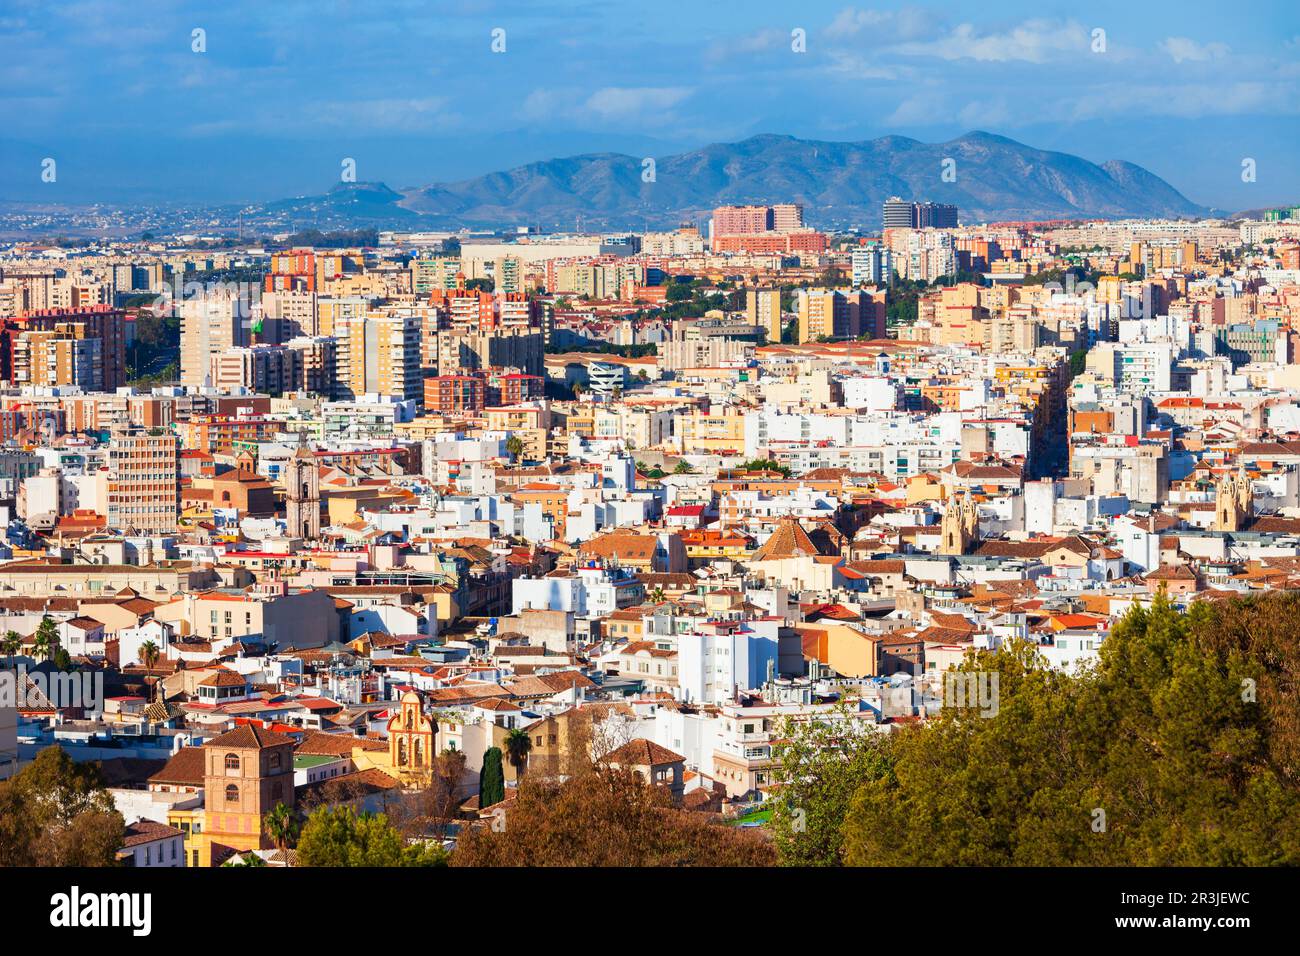 Vue panoramique aérienne de Malaga. Malaga est une ville de la communauté andalouse en Espagne Banque D'Images